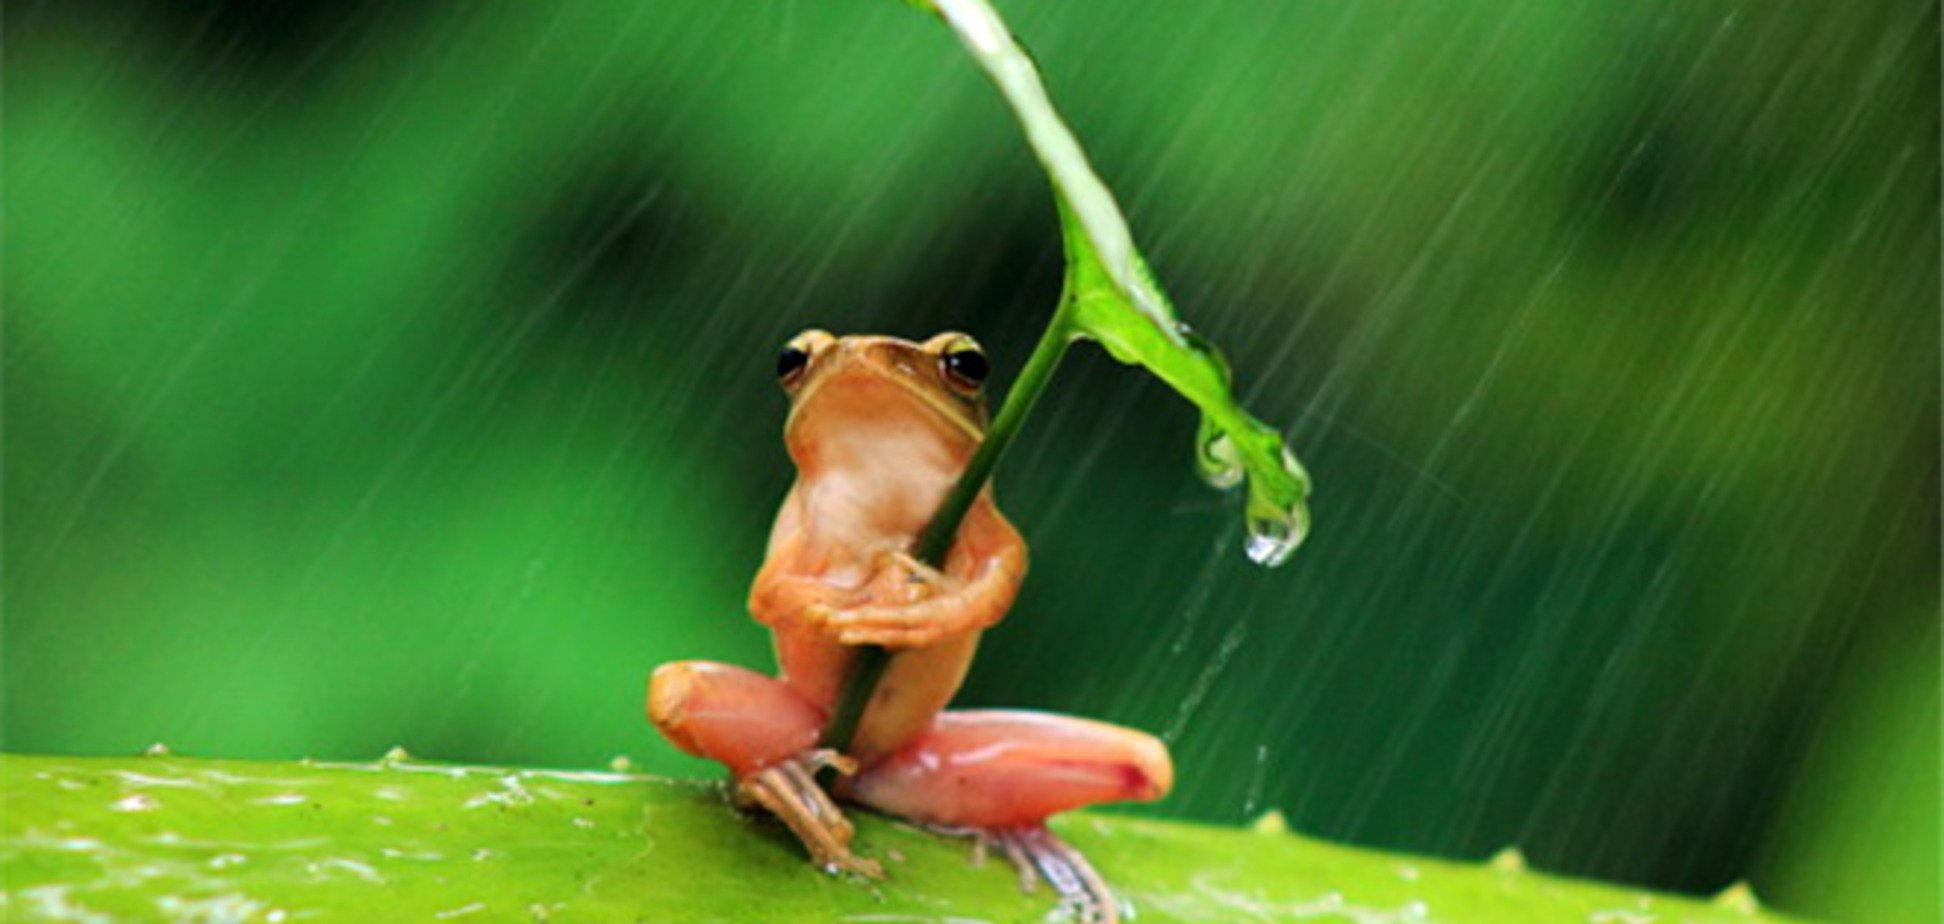 Интернет взорвала лягушка с зонтом